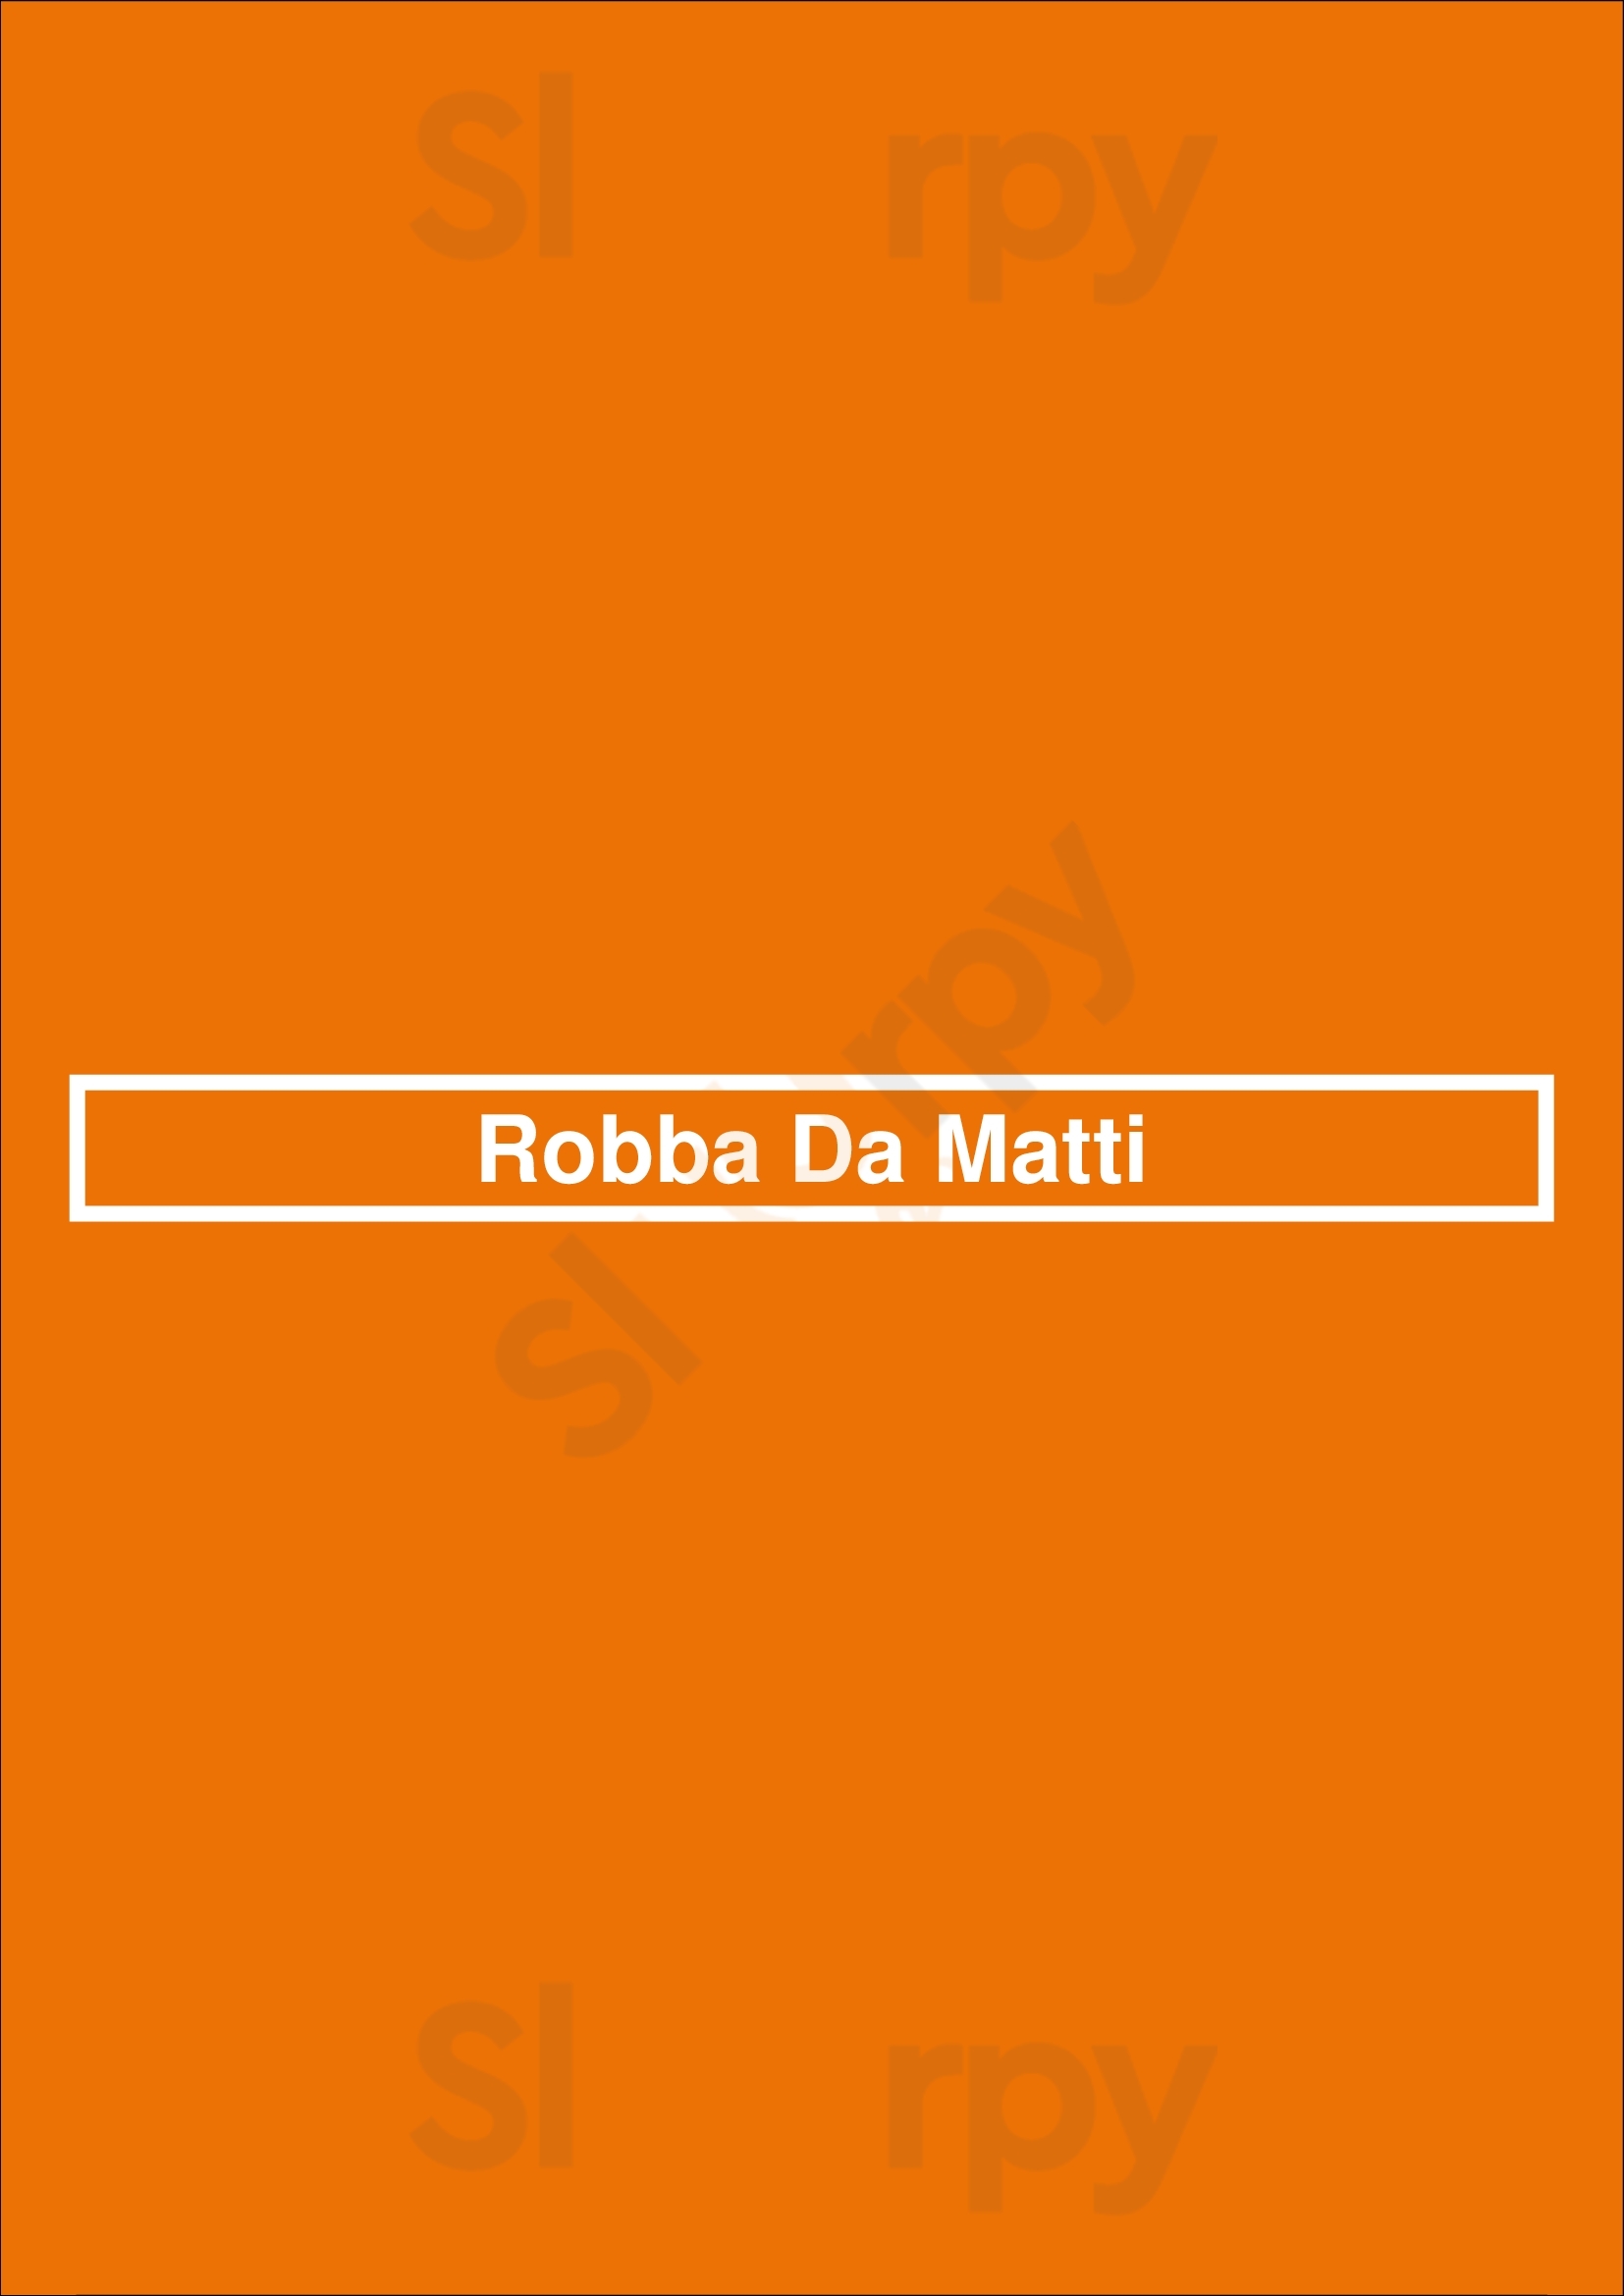 Robba Da Matti Vancouver Menu - 1